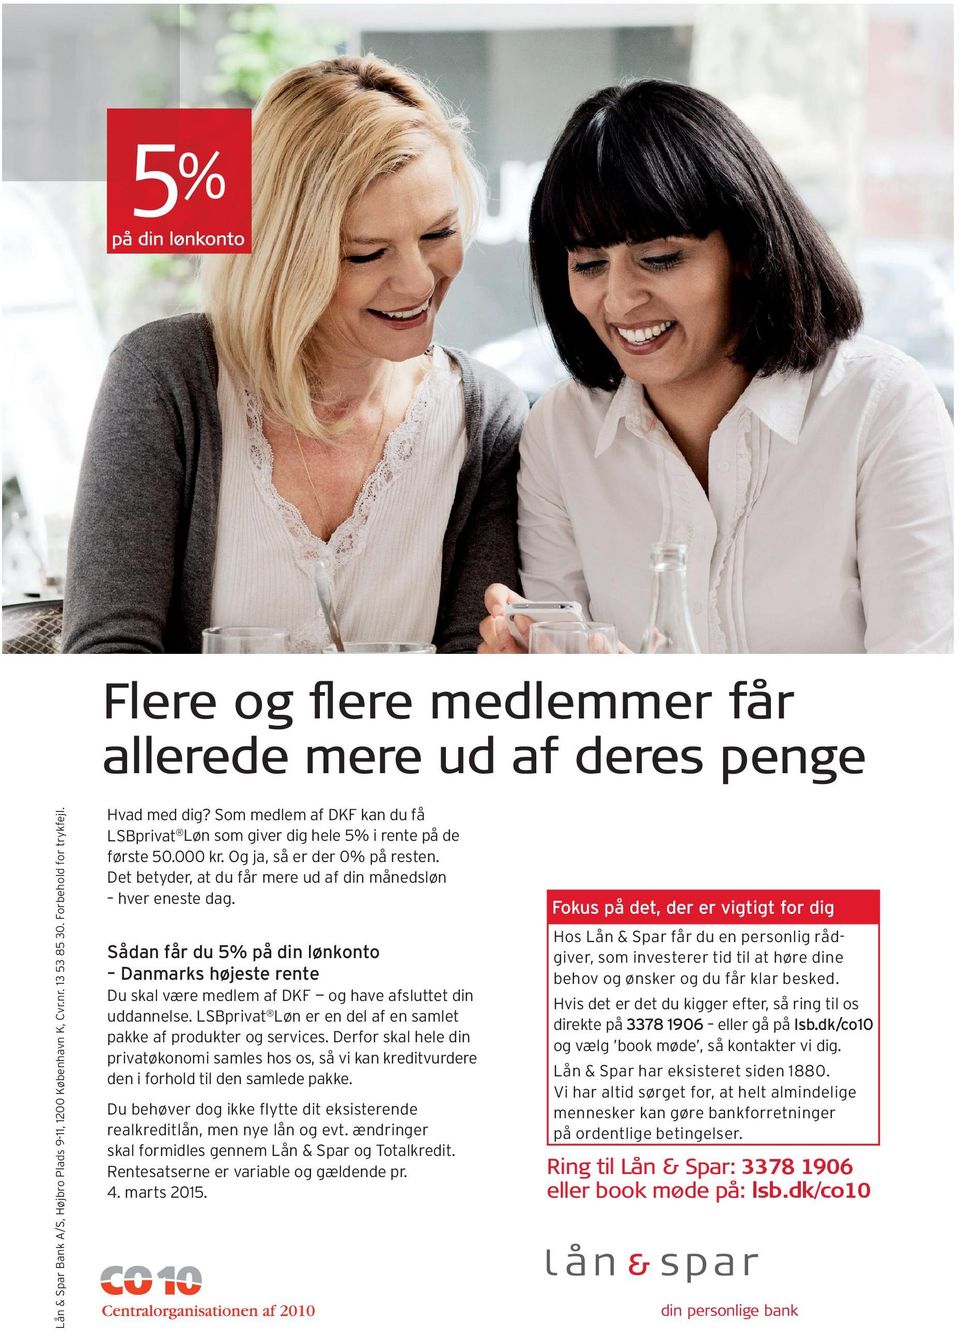 Sådan får du 5% på din lønkonto Danmarks højeste rente Du skal være medlem af DKF og have afsluttet din uddannelse. LSBprivat Løn er en del af en samlet pakke af produkter og services.